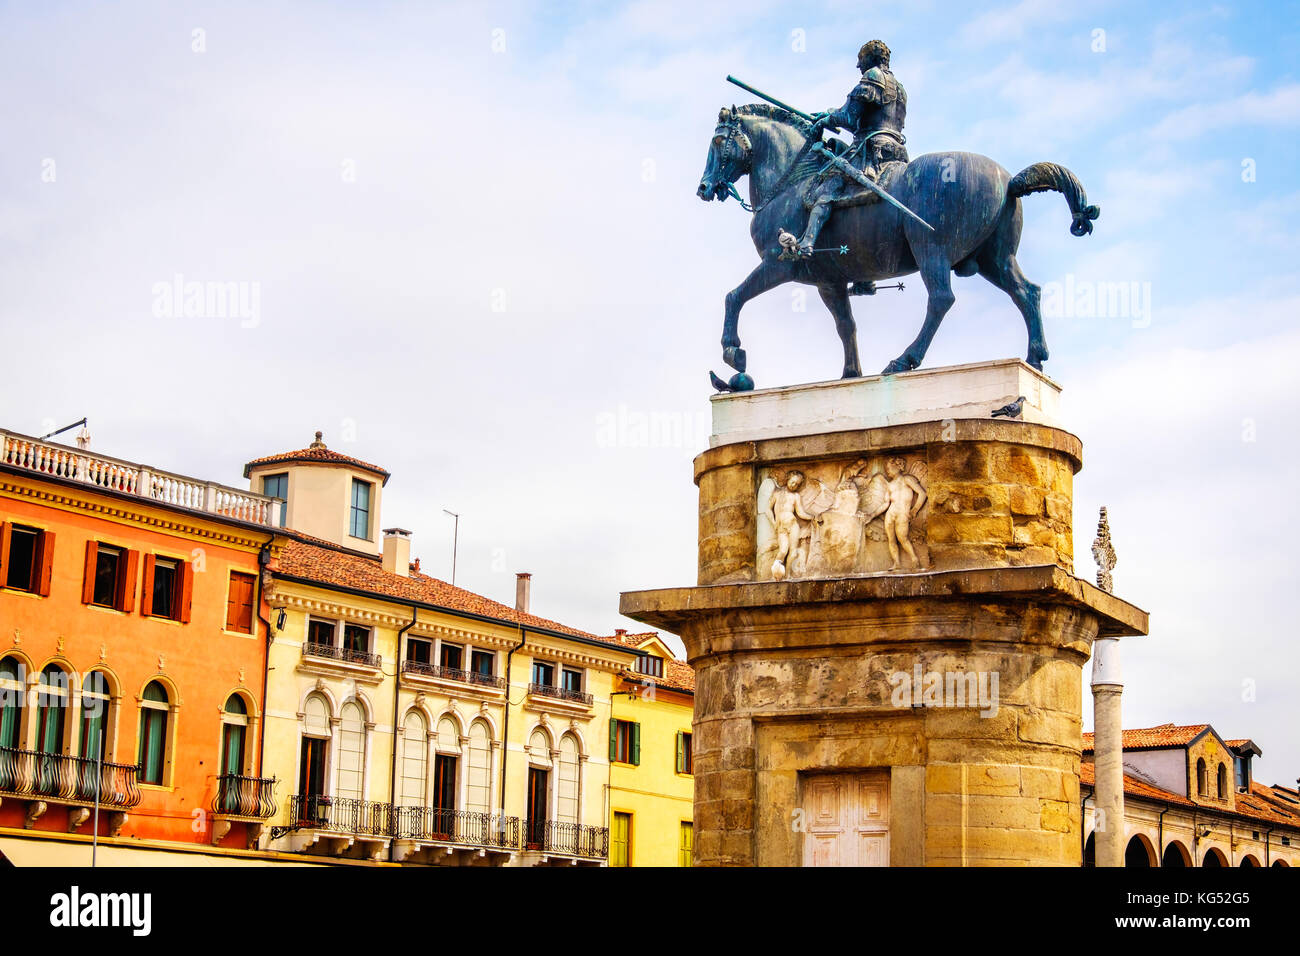 Equestrian statue of Gattamelata in Padua Donatello - Italy Stock Photo